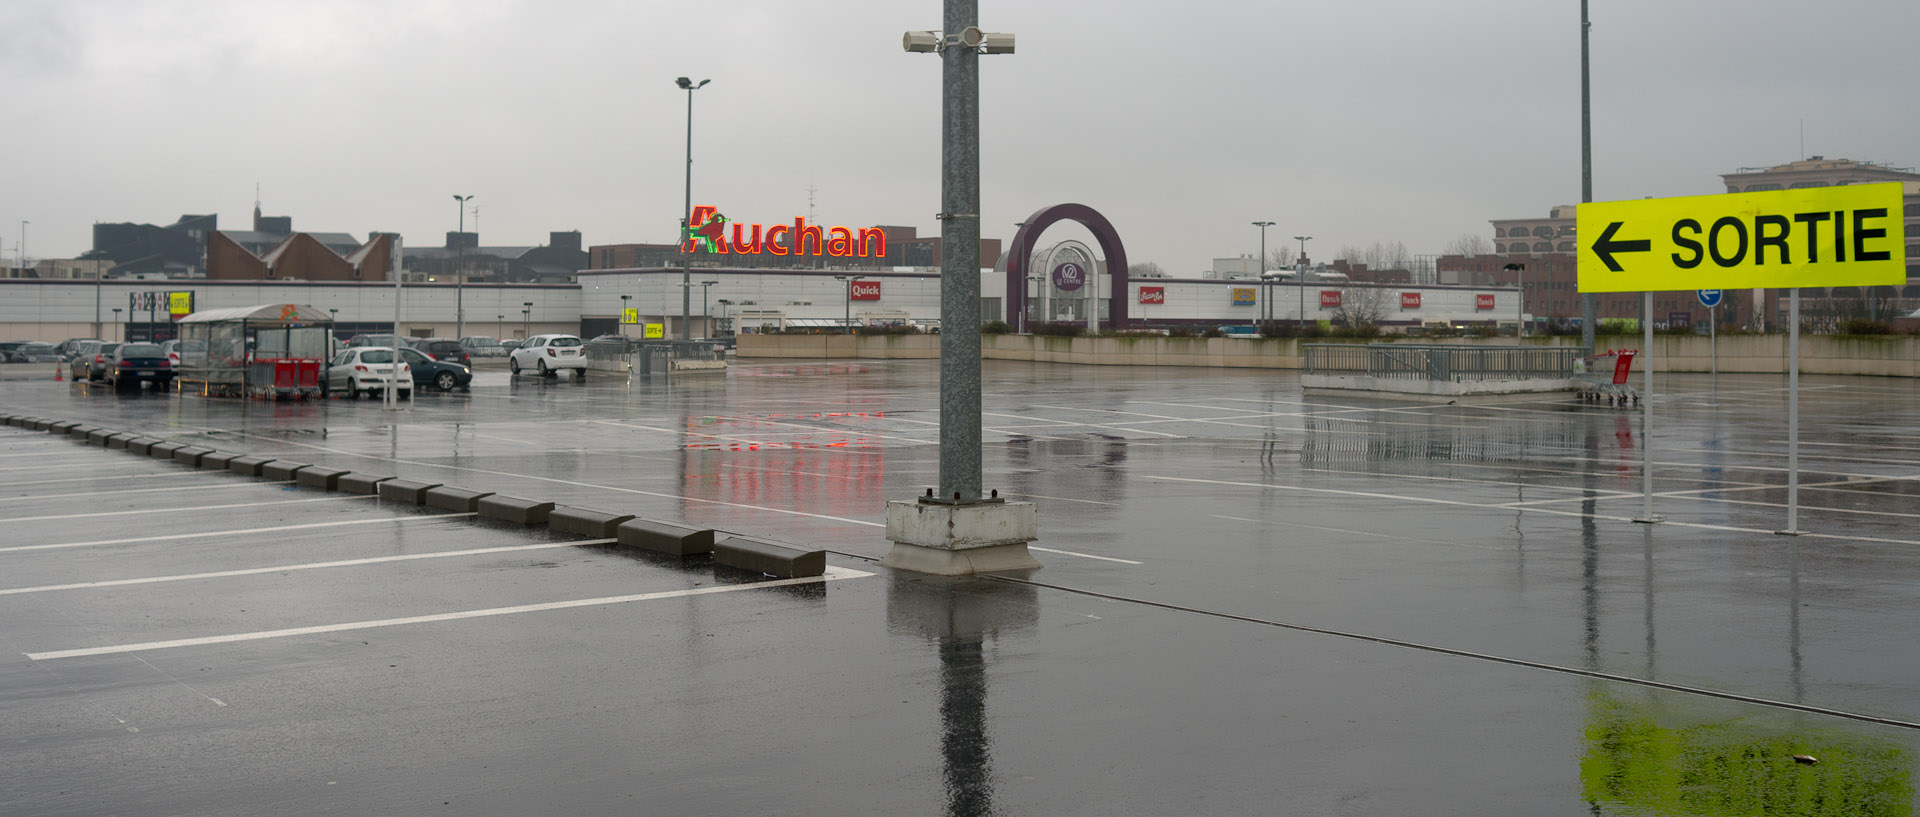 Parking supérieur du centre commercial Auchan V2, à Villeneuve d'Ascq.